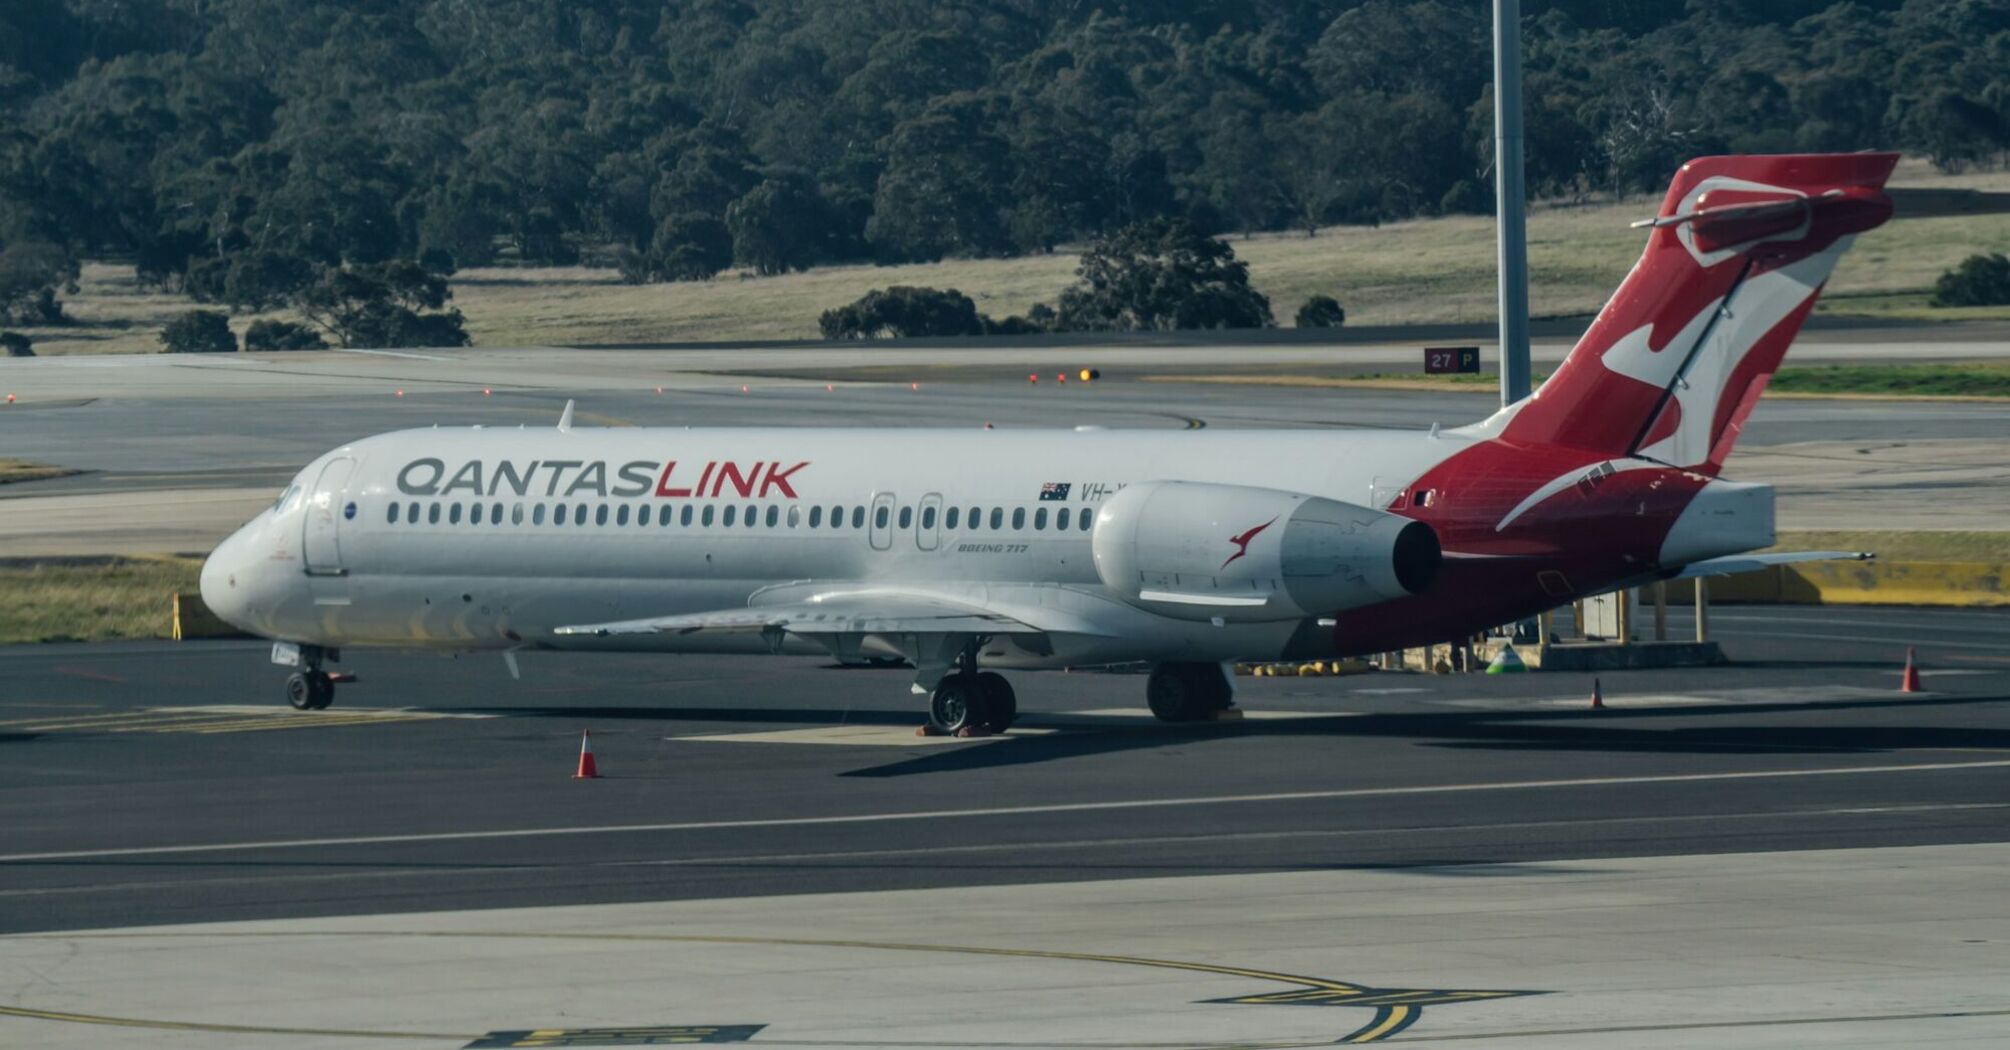 QantasLink Boeing 717 aircraft at Hobart Airport